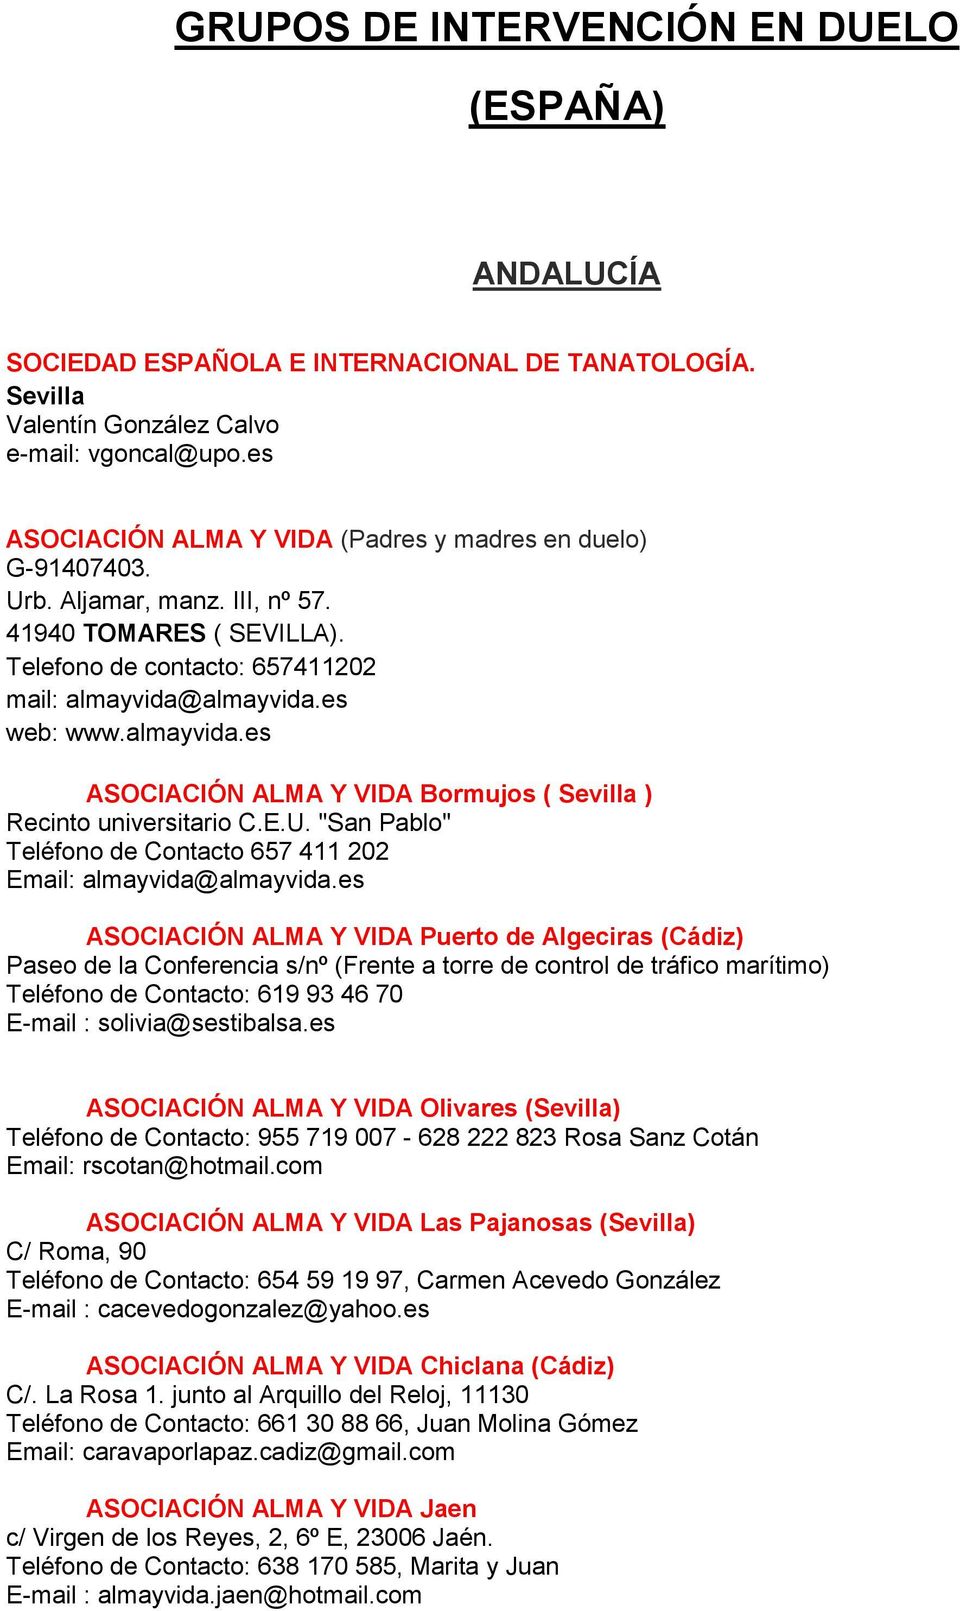 almayvida.es ASOCIACIÓN ALMA Y VIDA Bormujos ( Sevilla ) Recinto universitario C.E.U. "San Pablo" Teléfono de Contacto 657 411 202 Email: almayvida@almayvida.